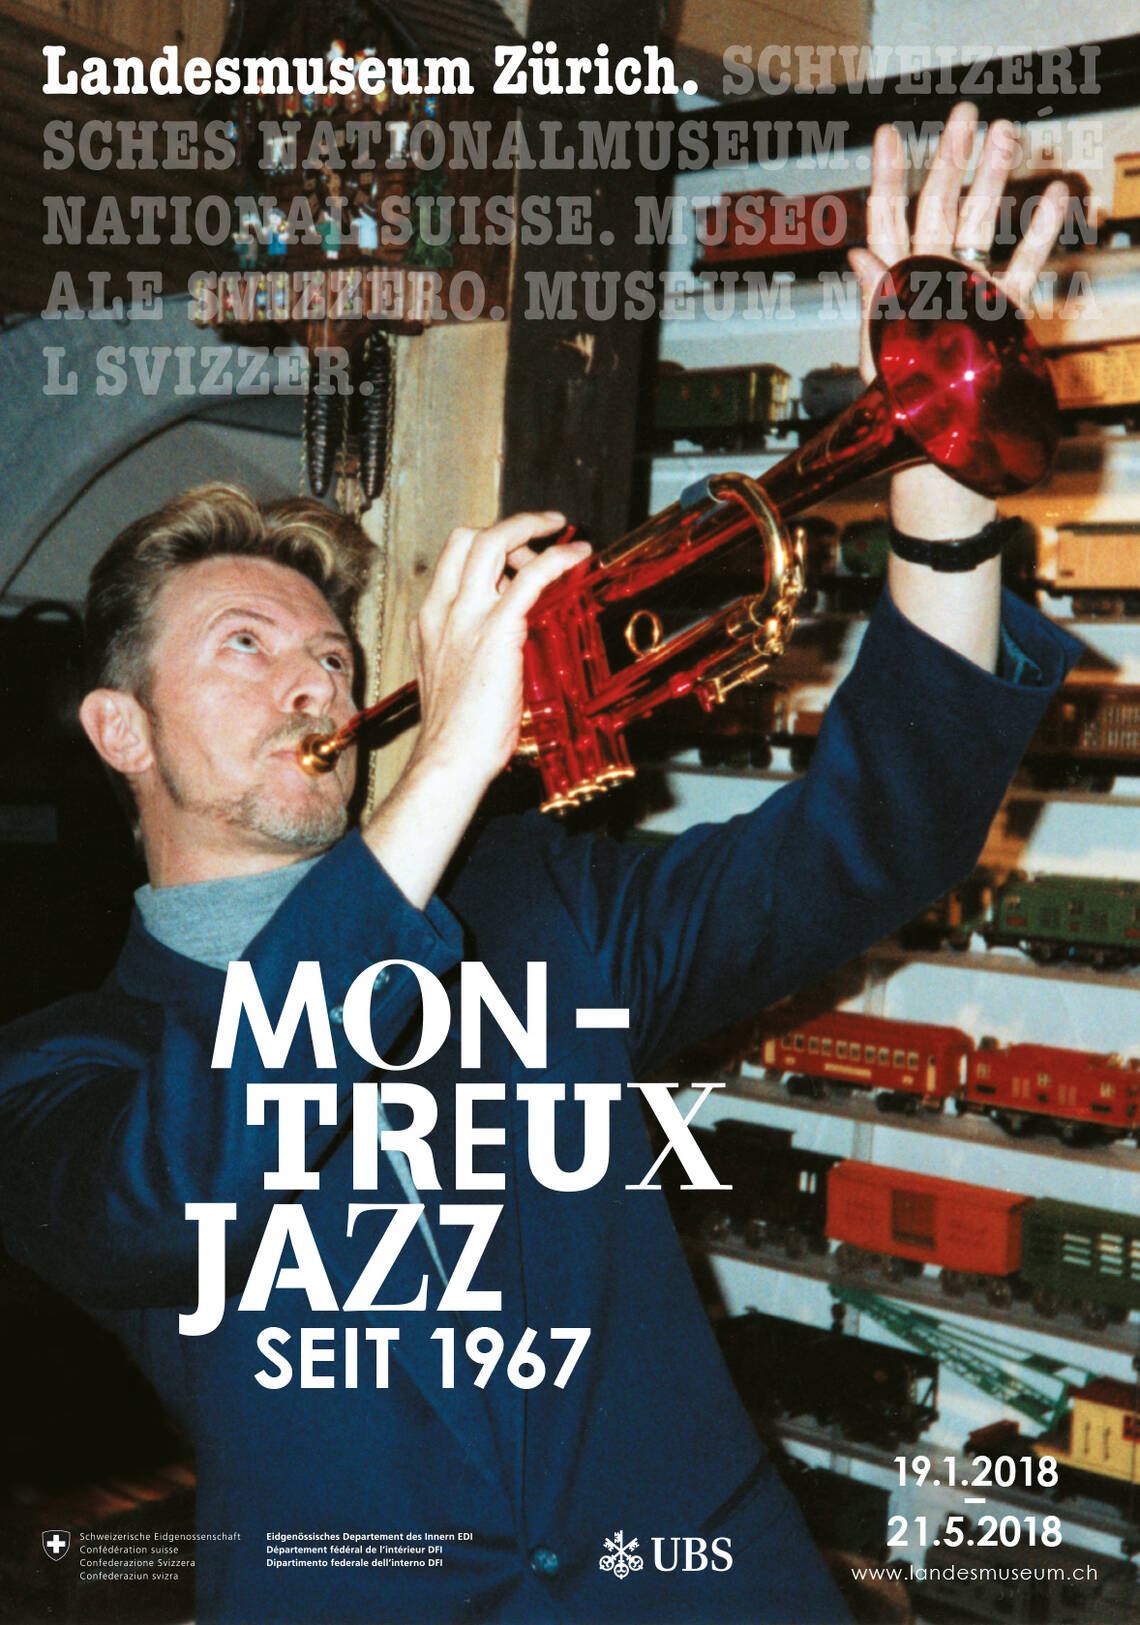 Plakat der Ausstellung "Montreux Jazz"